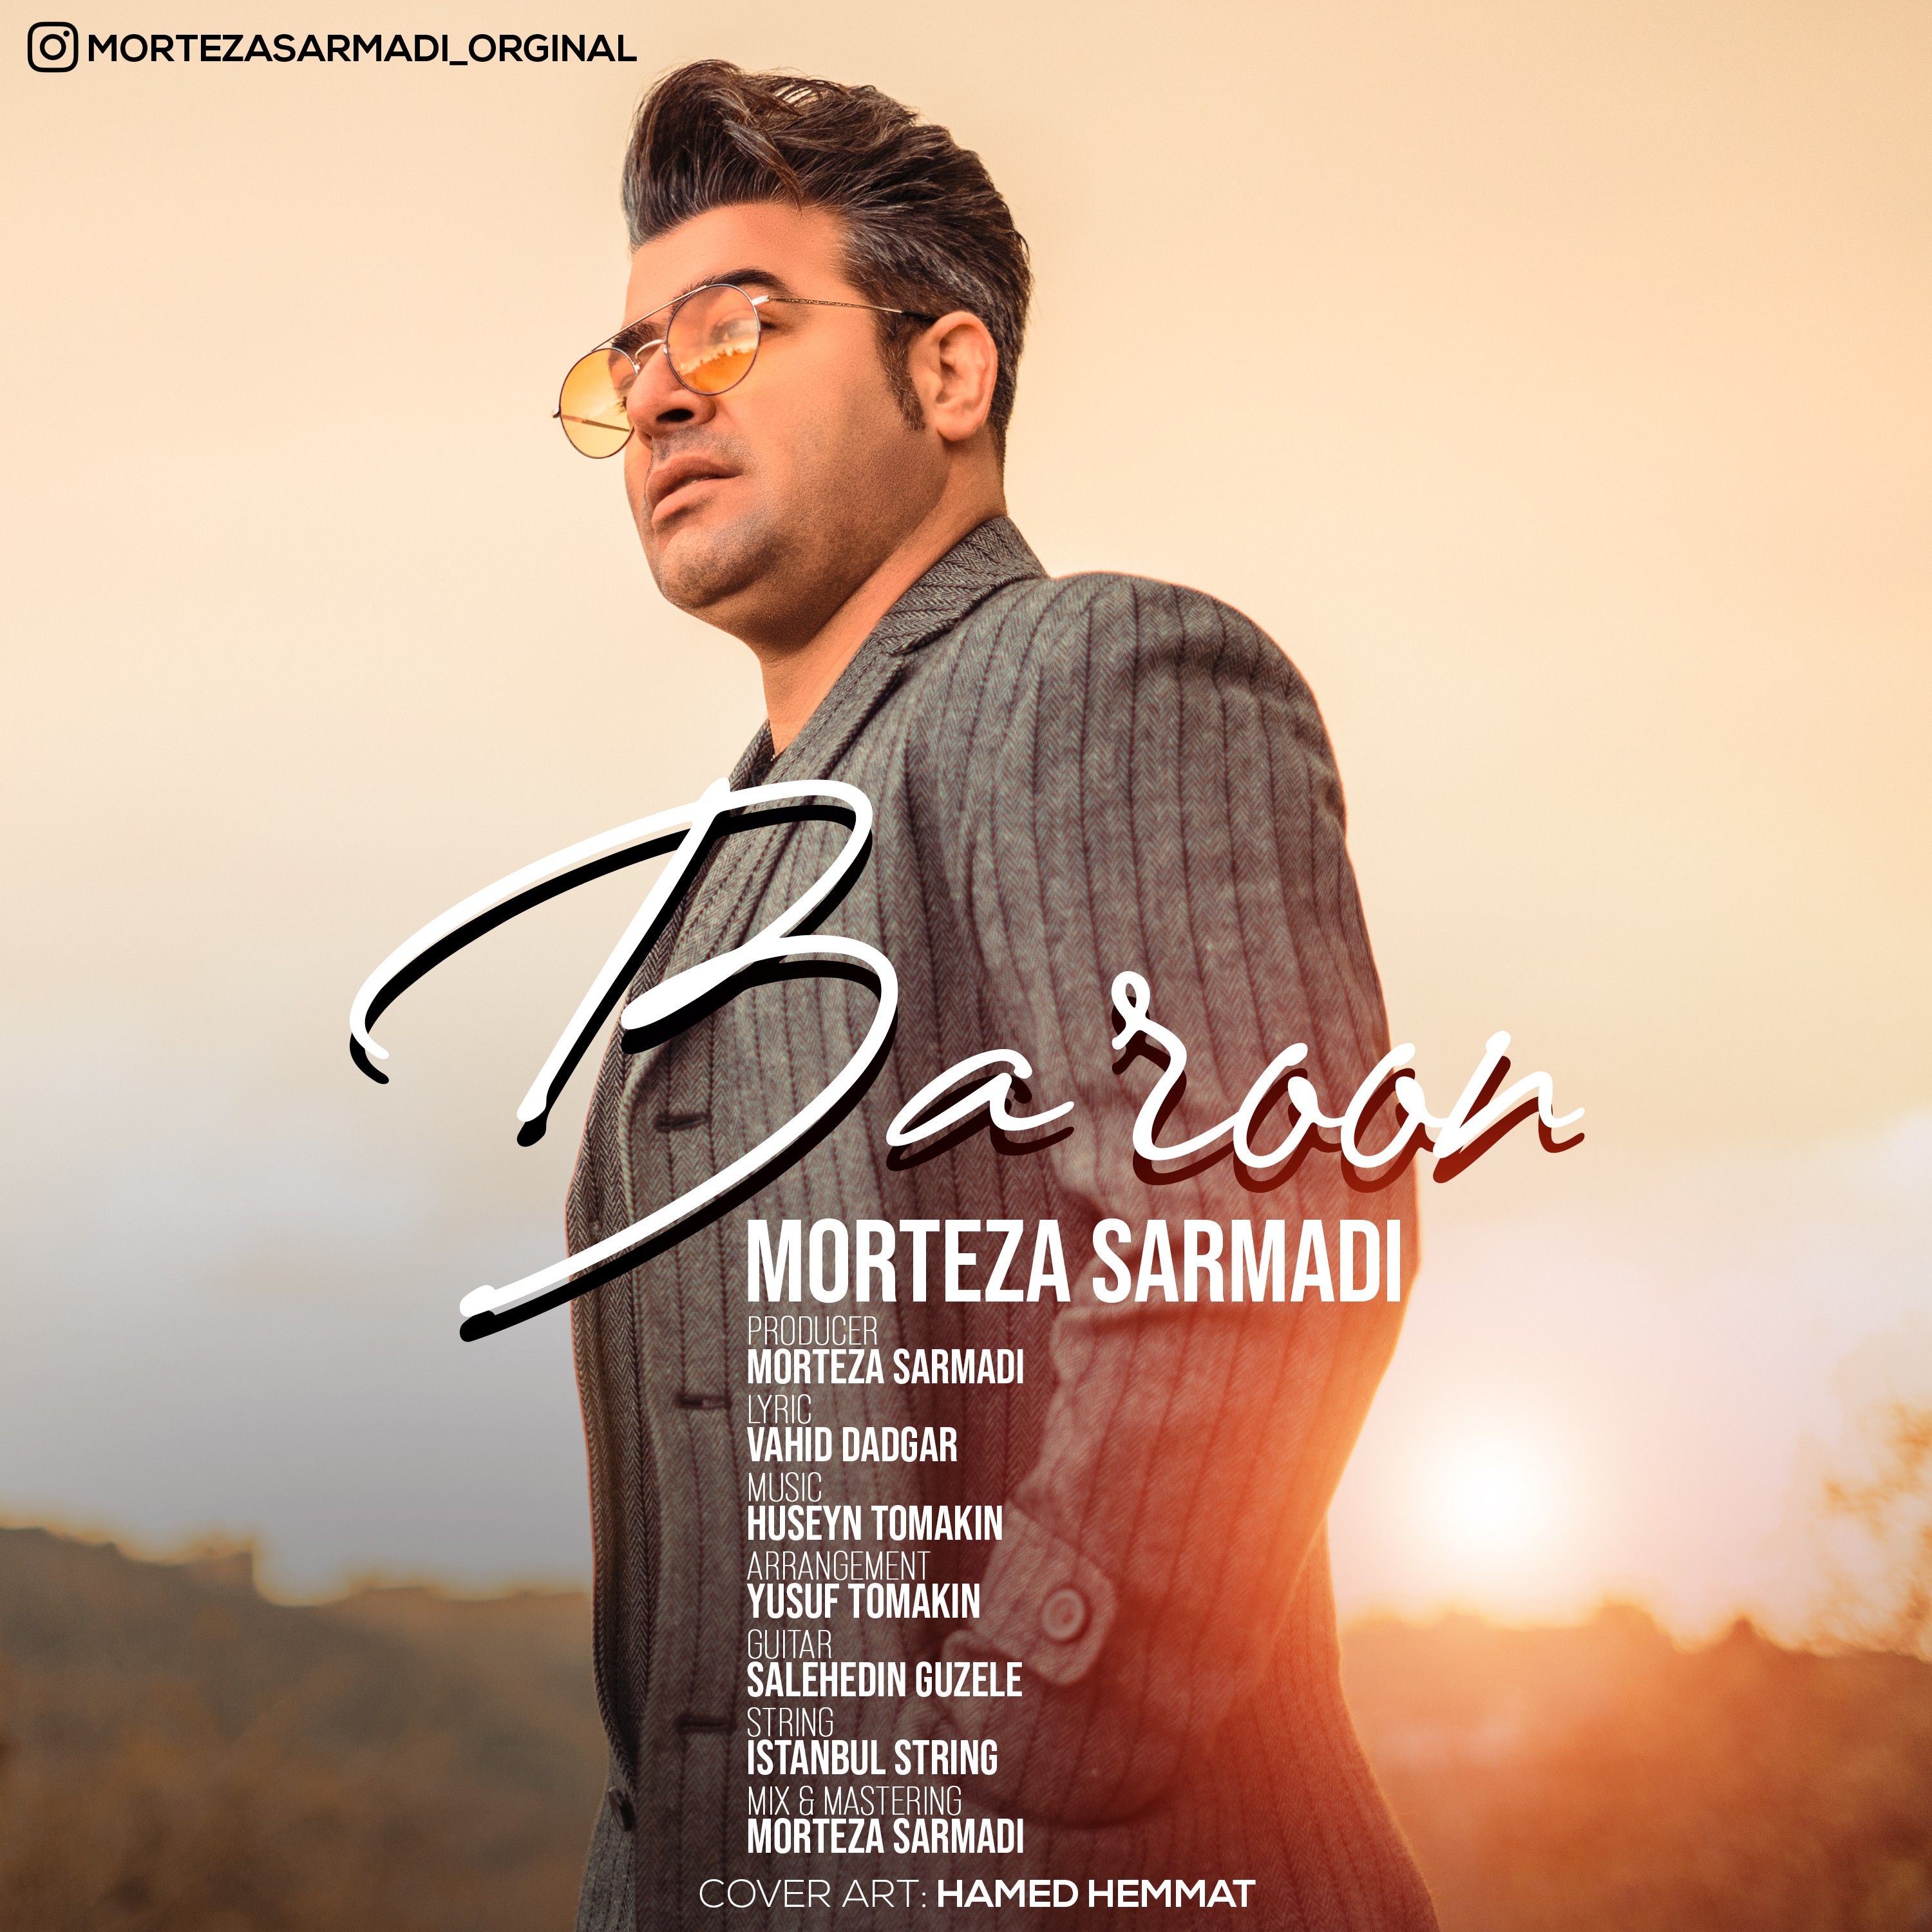  دانلود آهنگ جدید مرتضی سرمدی - بارون | Download New Music By Morteza Sarmadi - Baroon